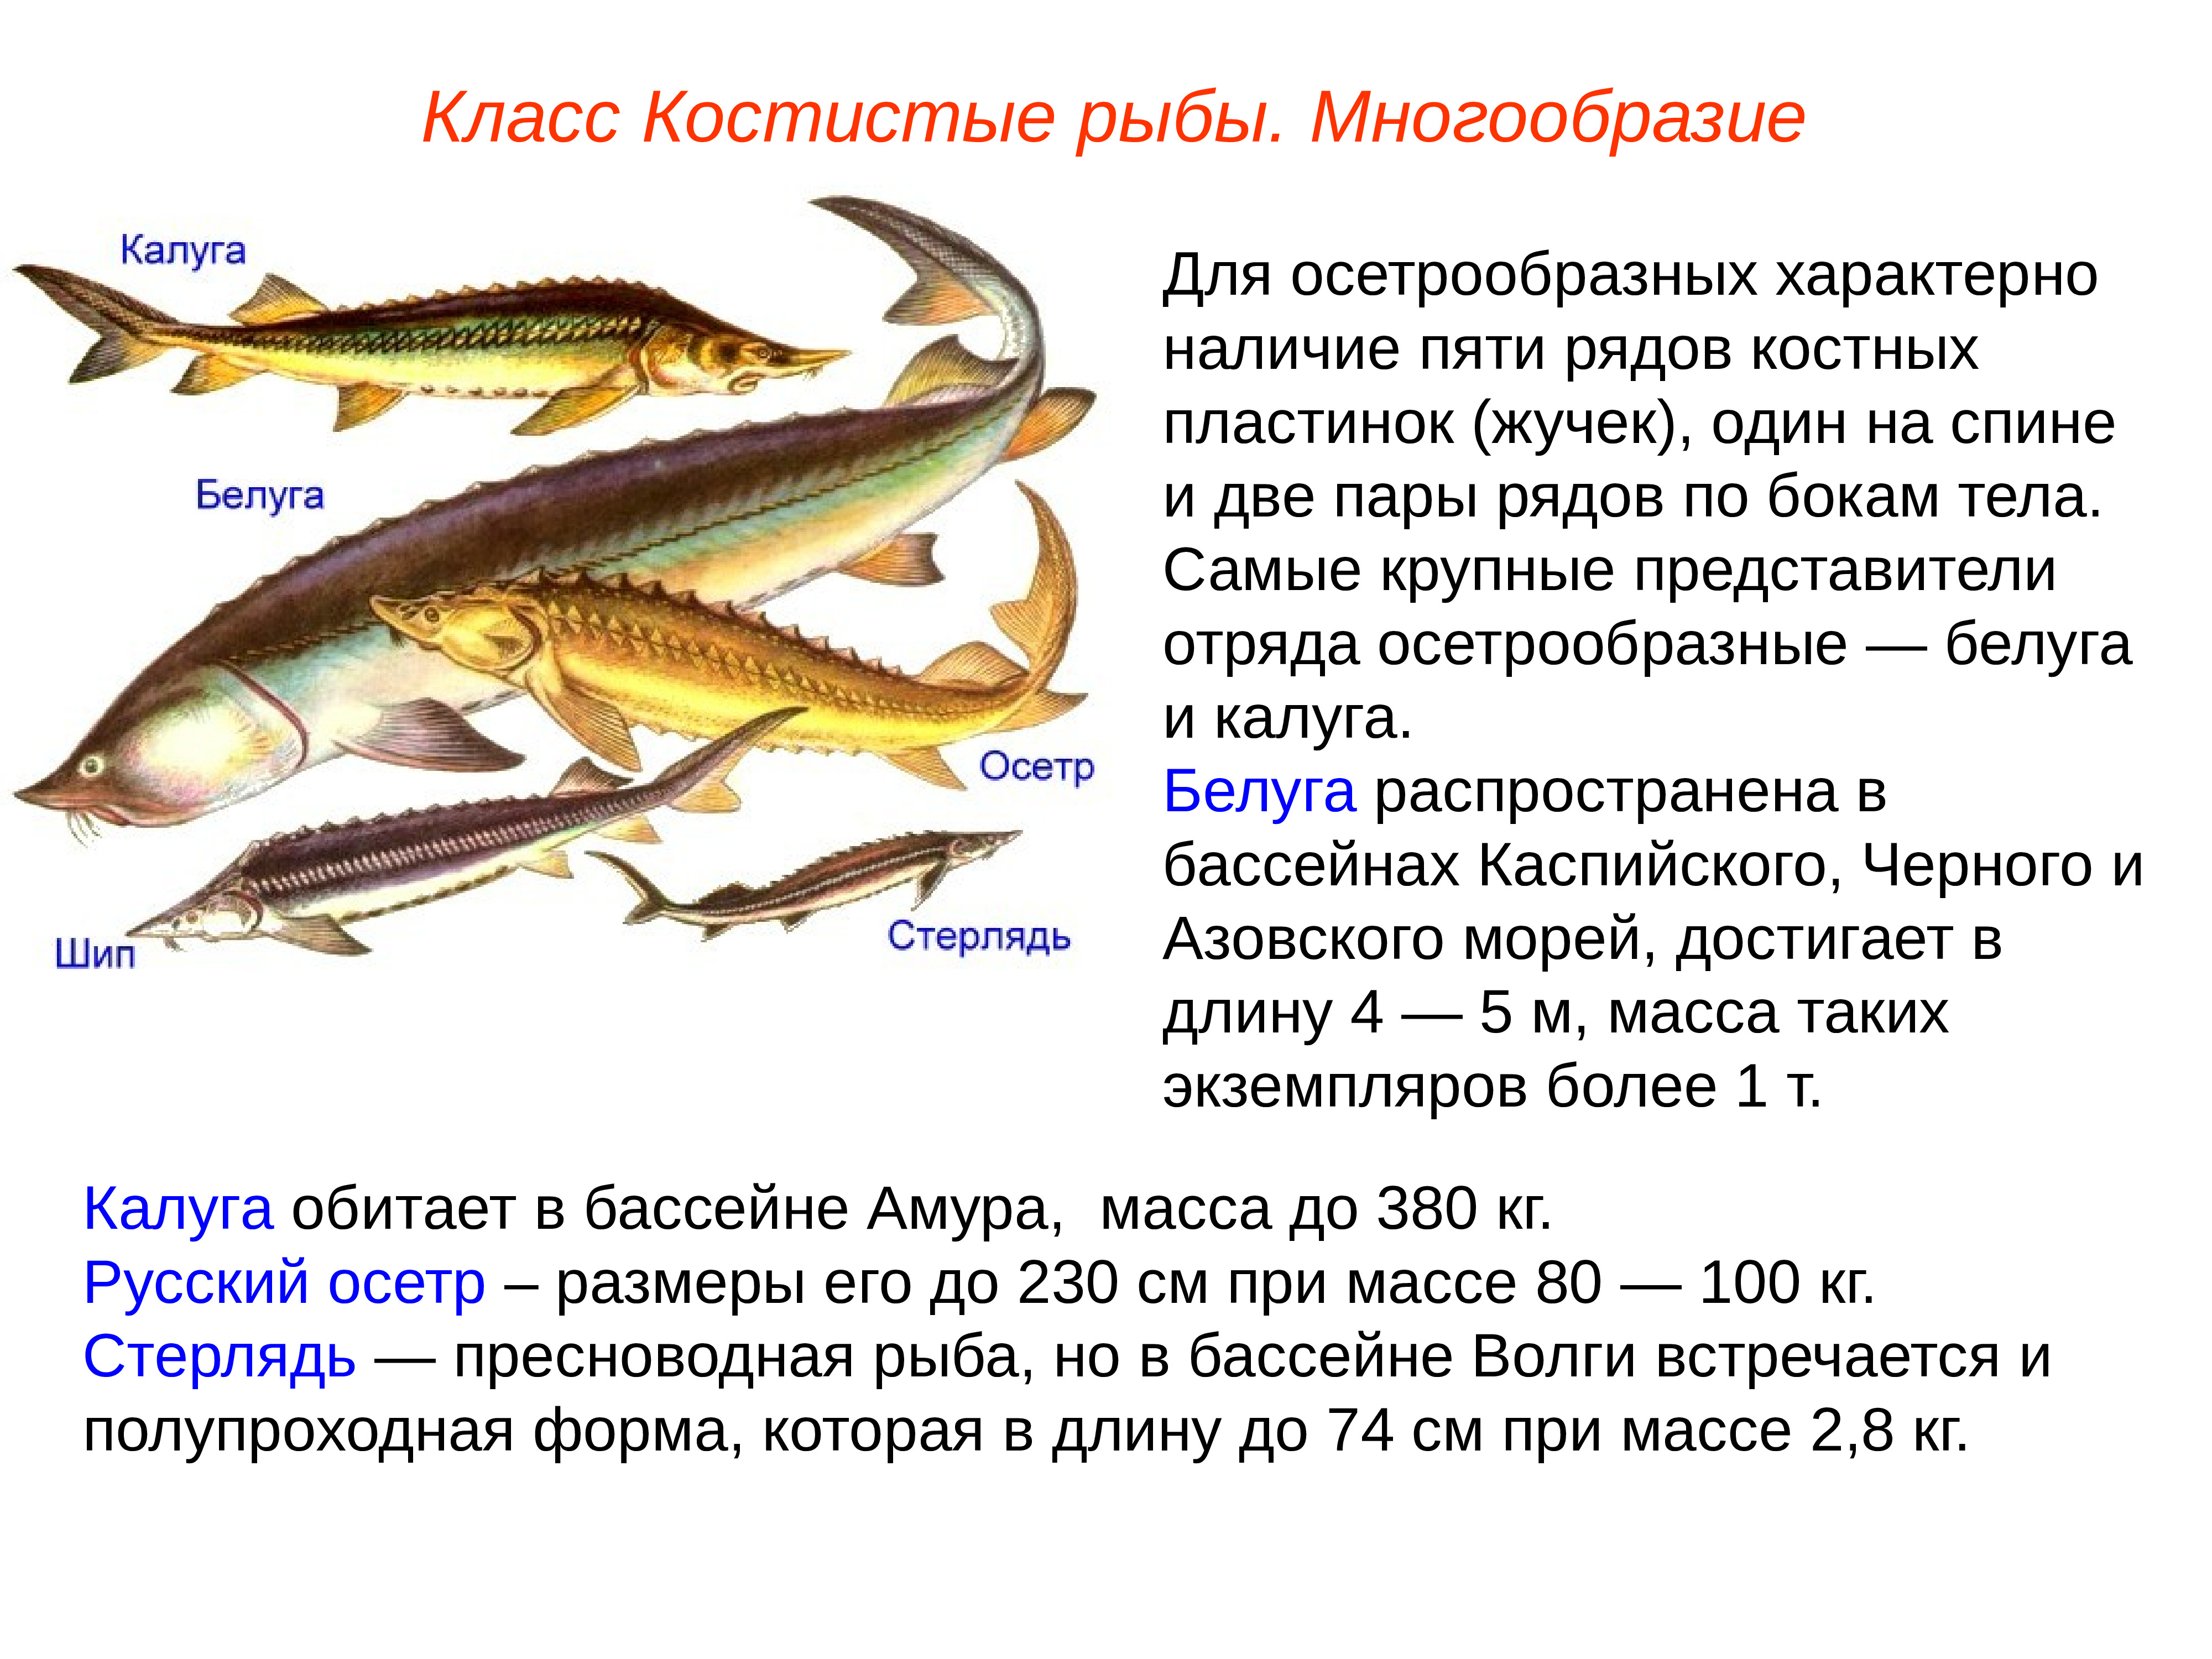 Класс костистые рыбы представители